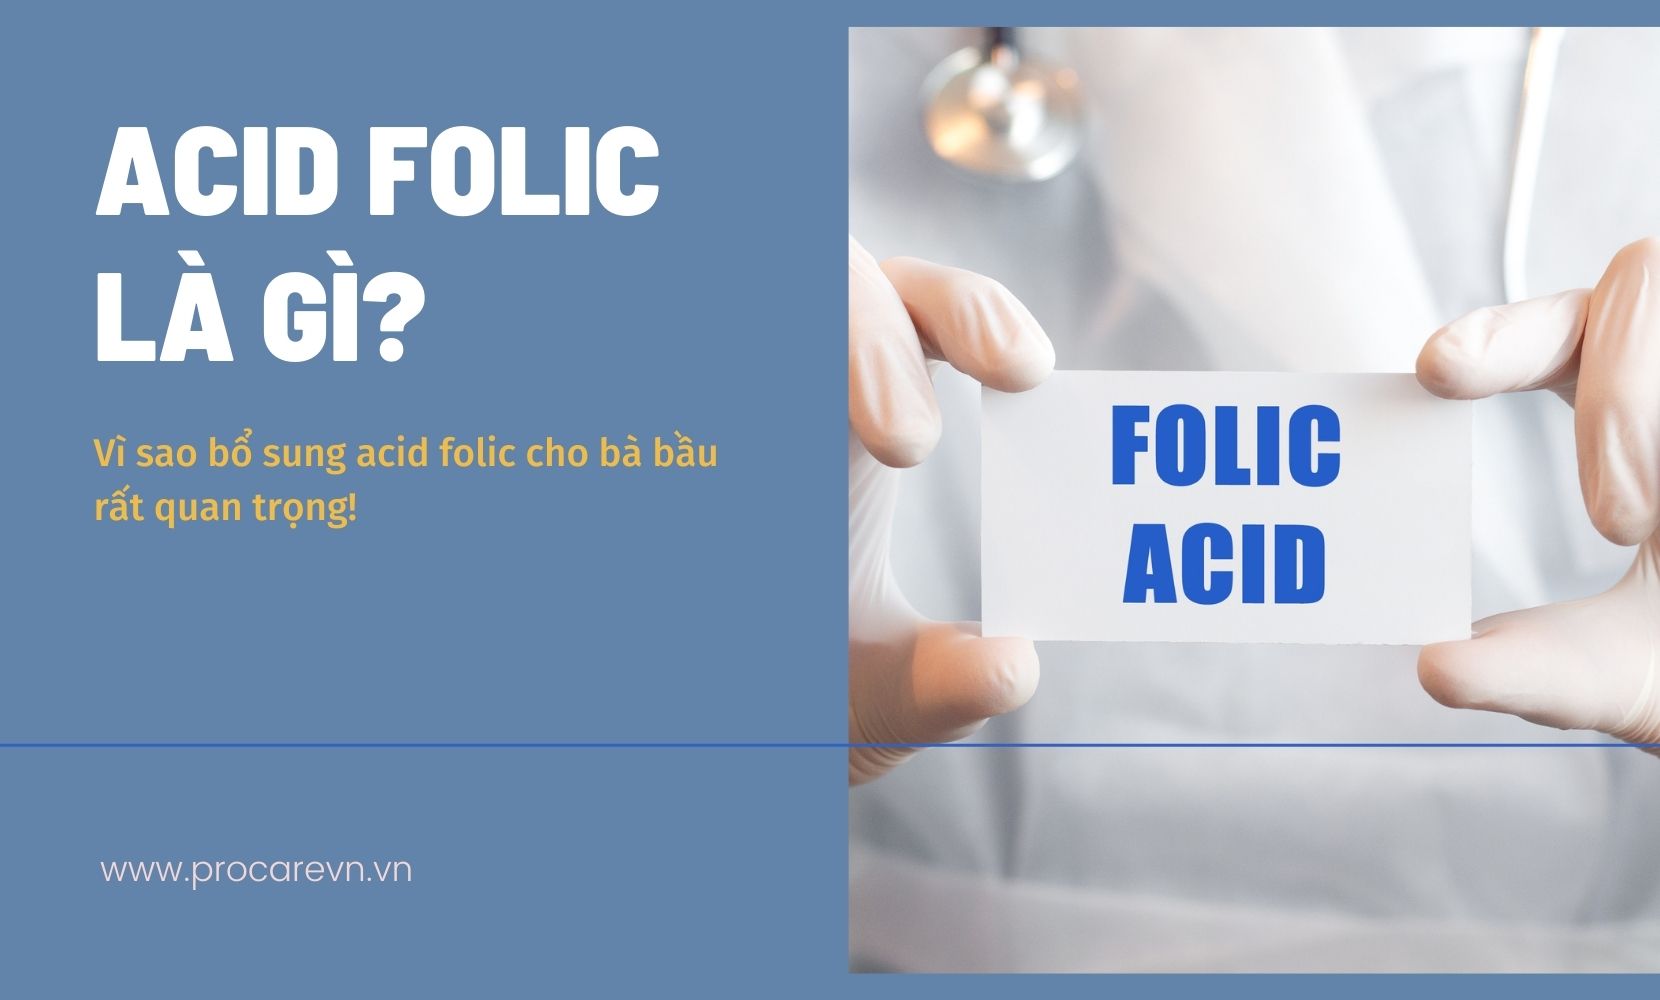 Liệu thuốc axit folic có tác dụng phụ không?
